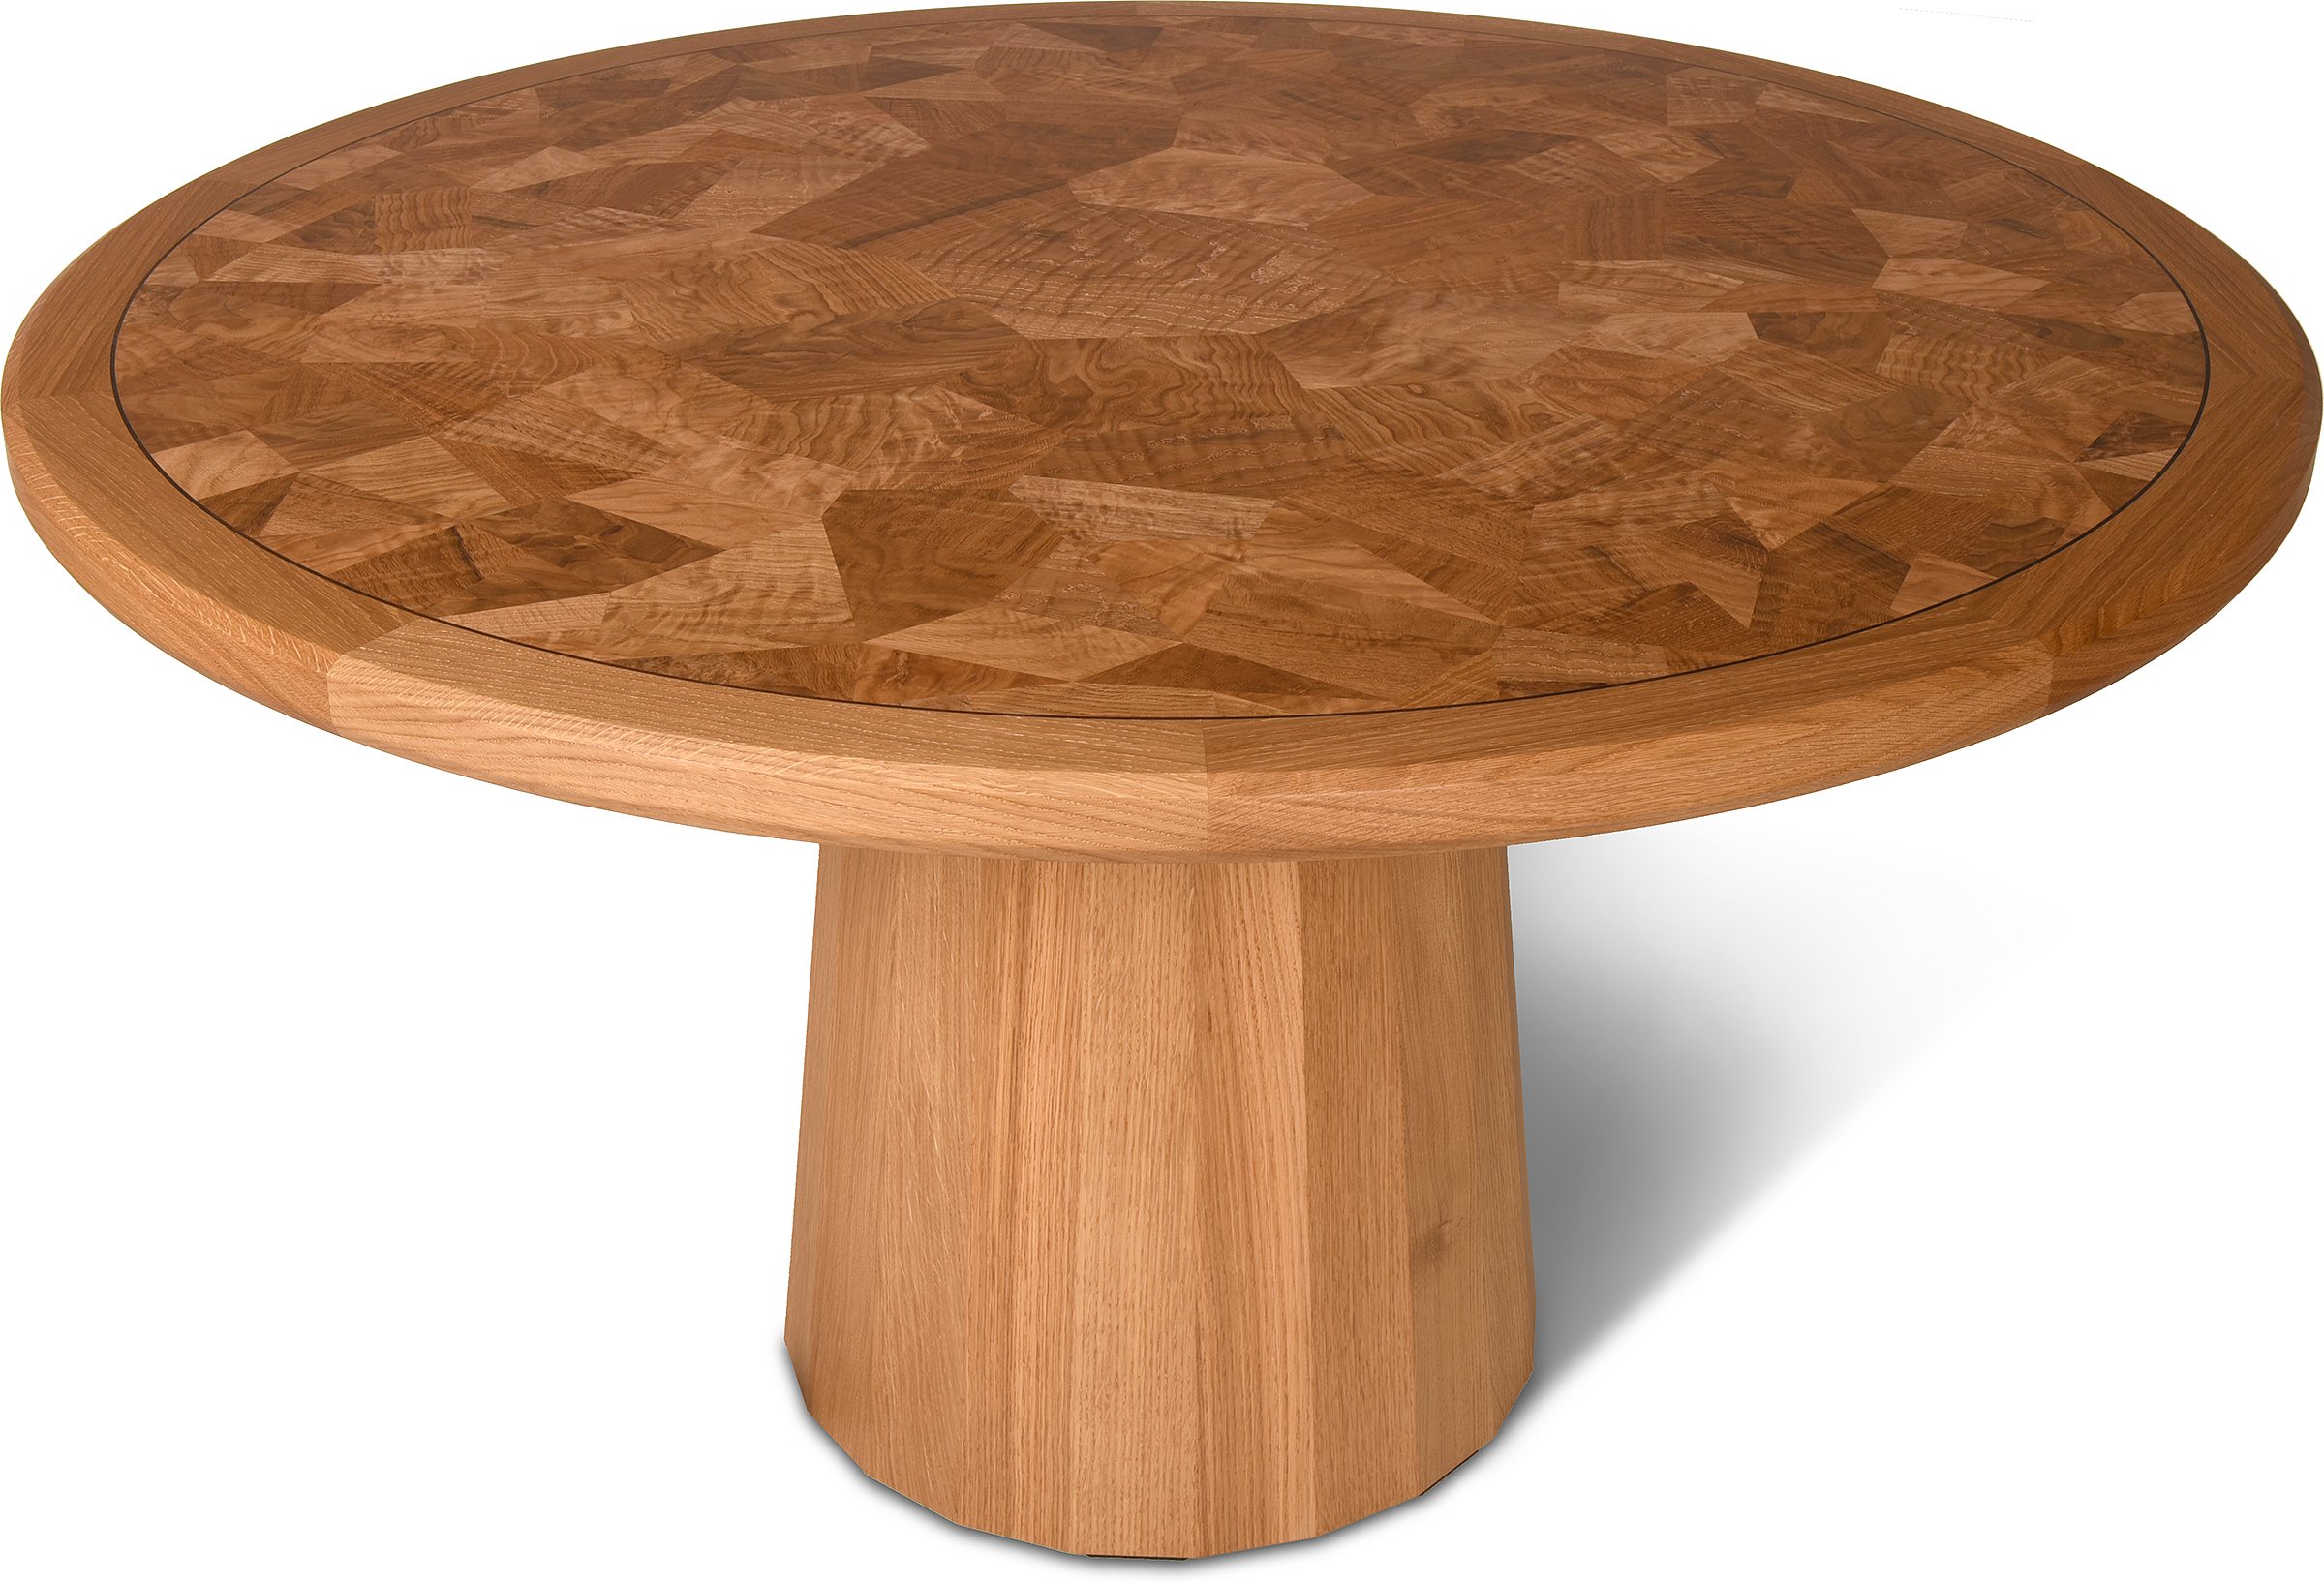 White Oak Round Table